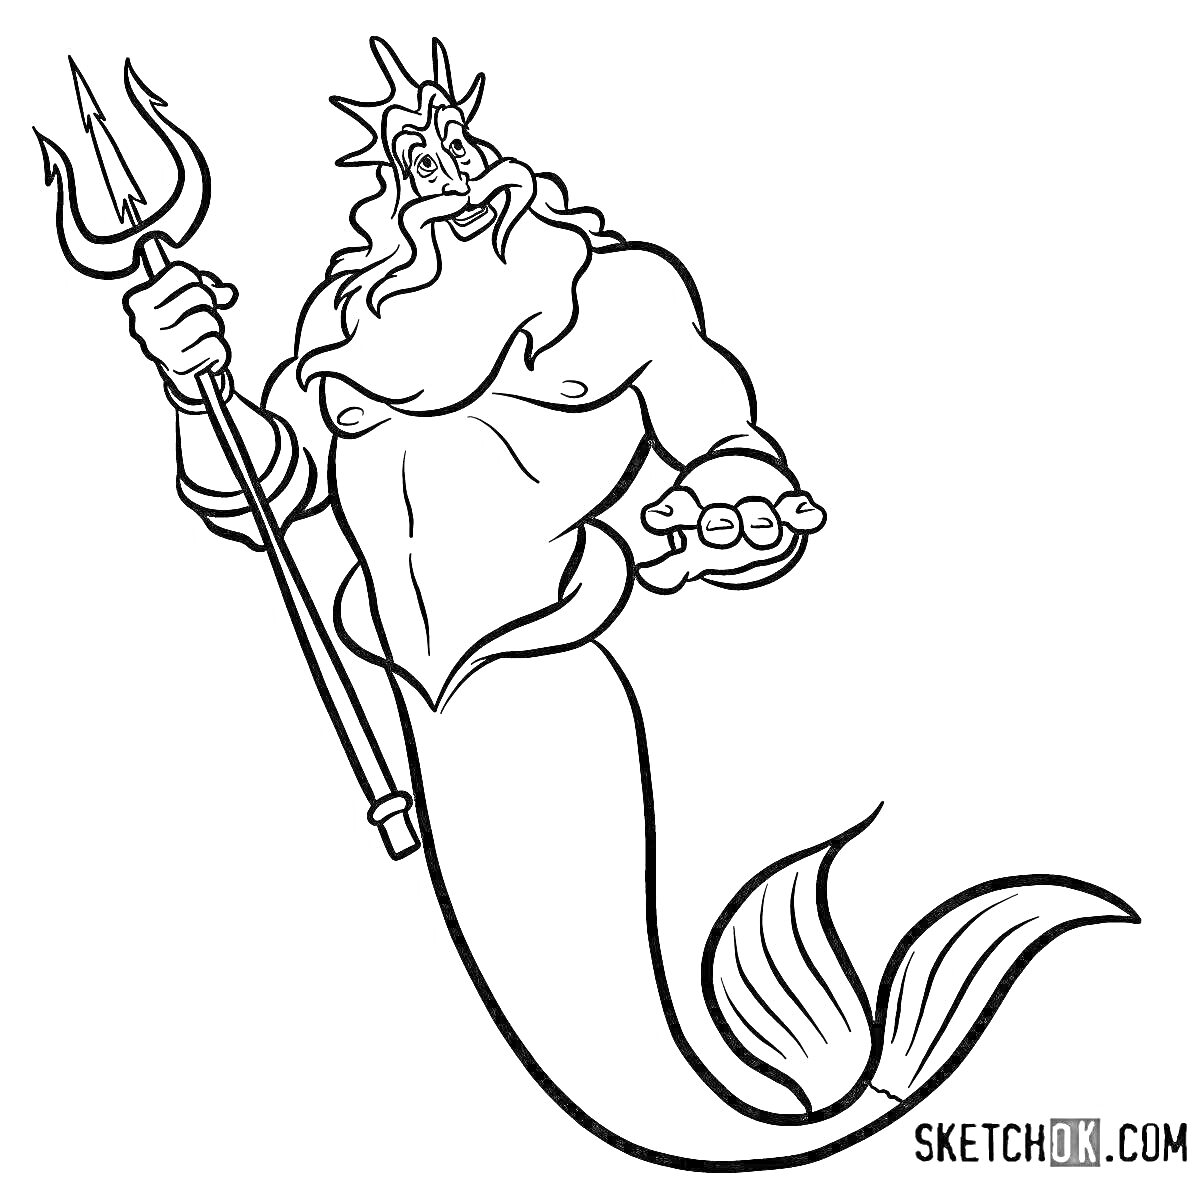 Раскраска Морской царь с трезубцем и рыбьим хвостом